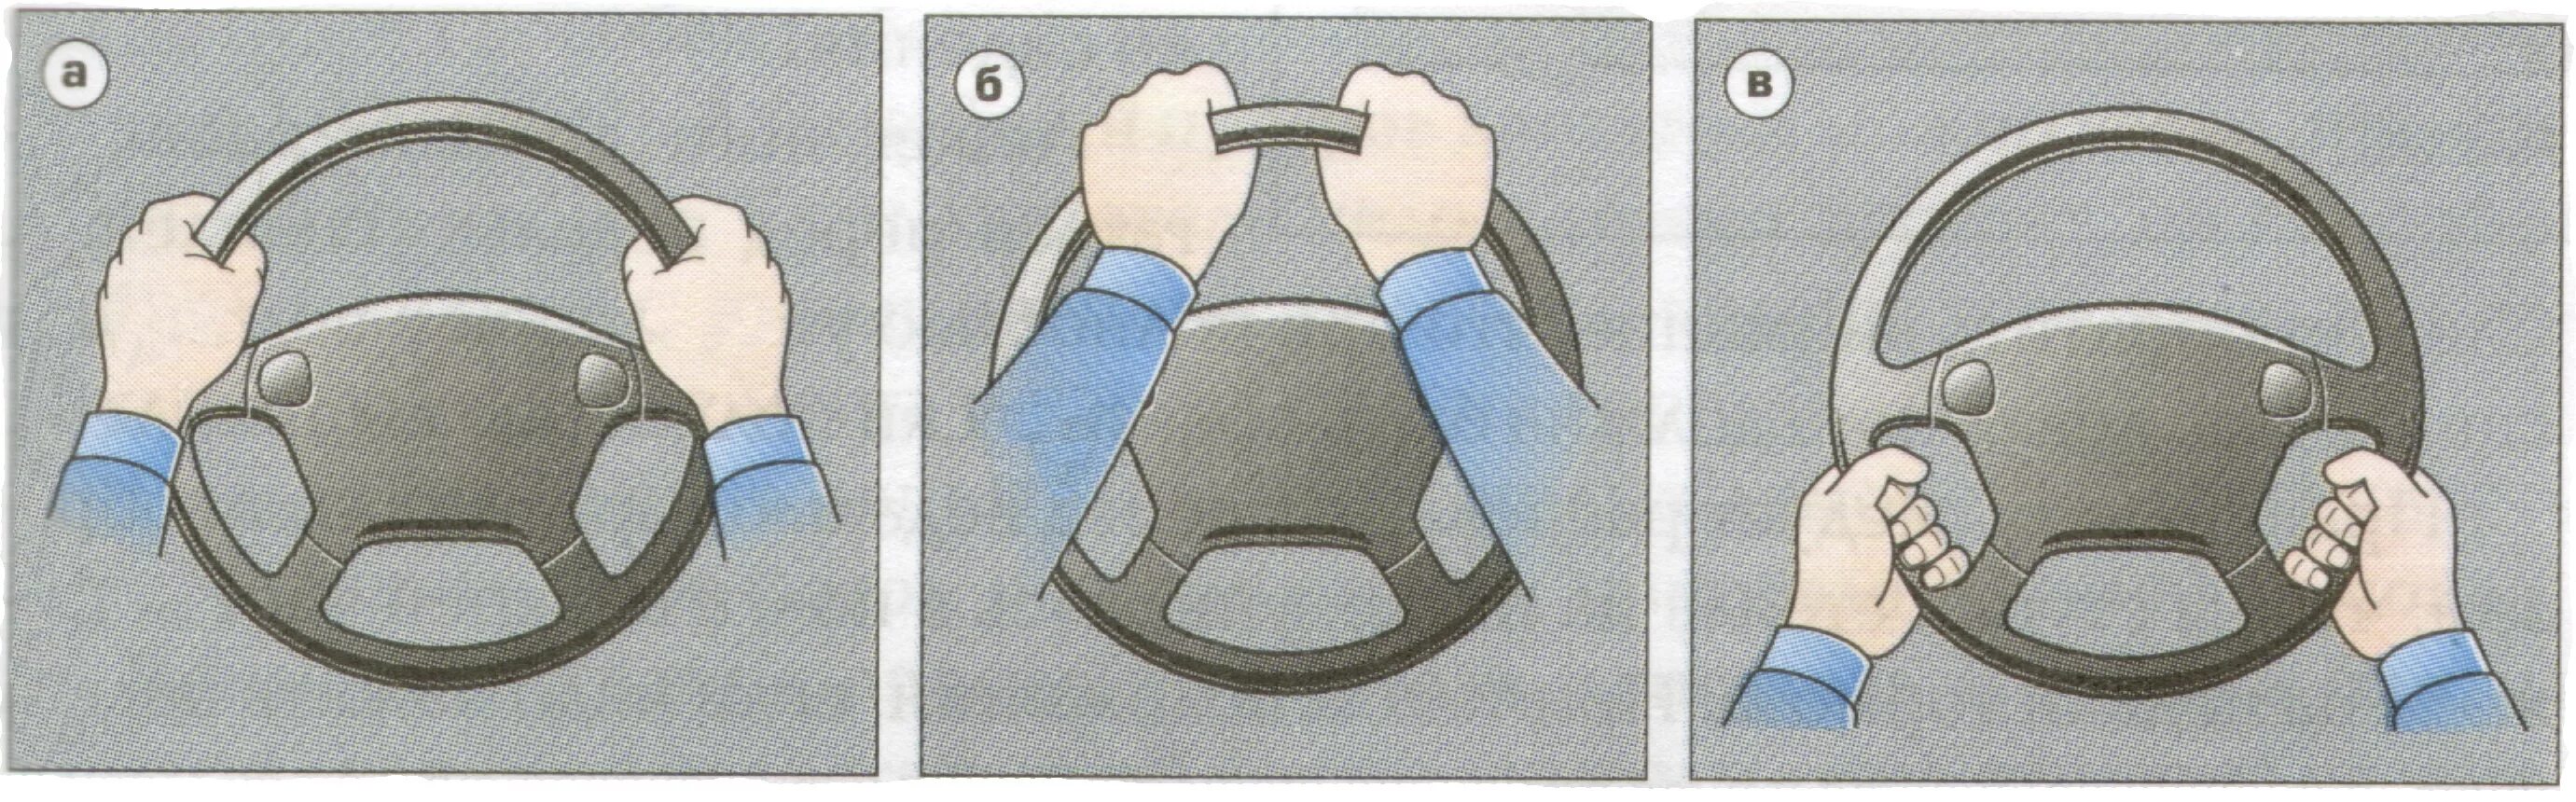 Как правильно держать руль при вождении. Как правильно держать руль. Положение рук на руле. Правильное положение рук на руле автомобиля. Положение рук на рулевом колесе.